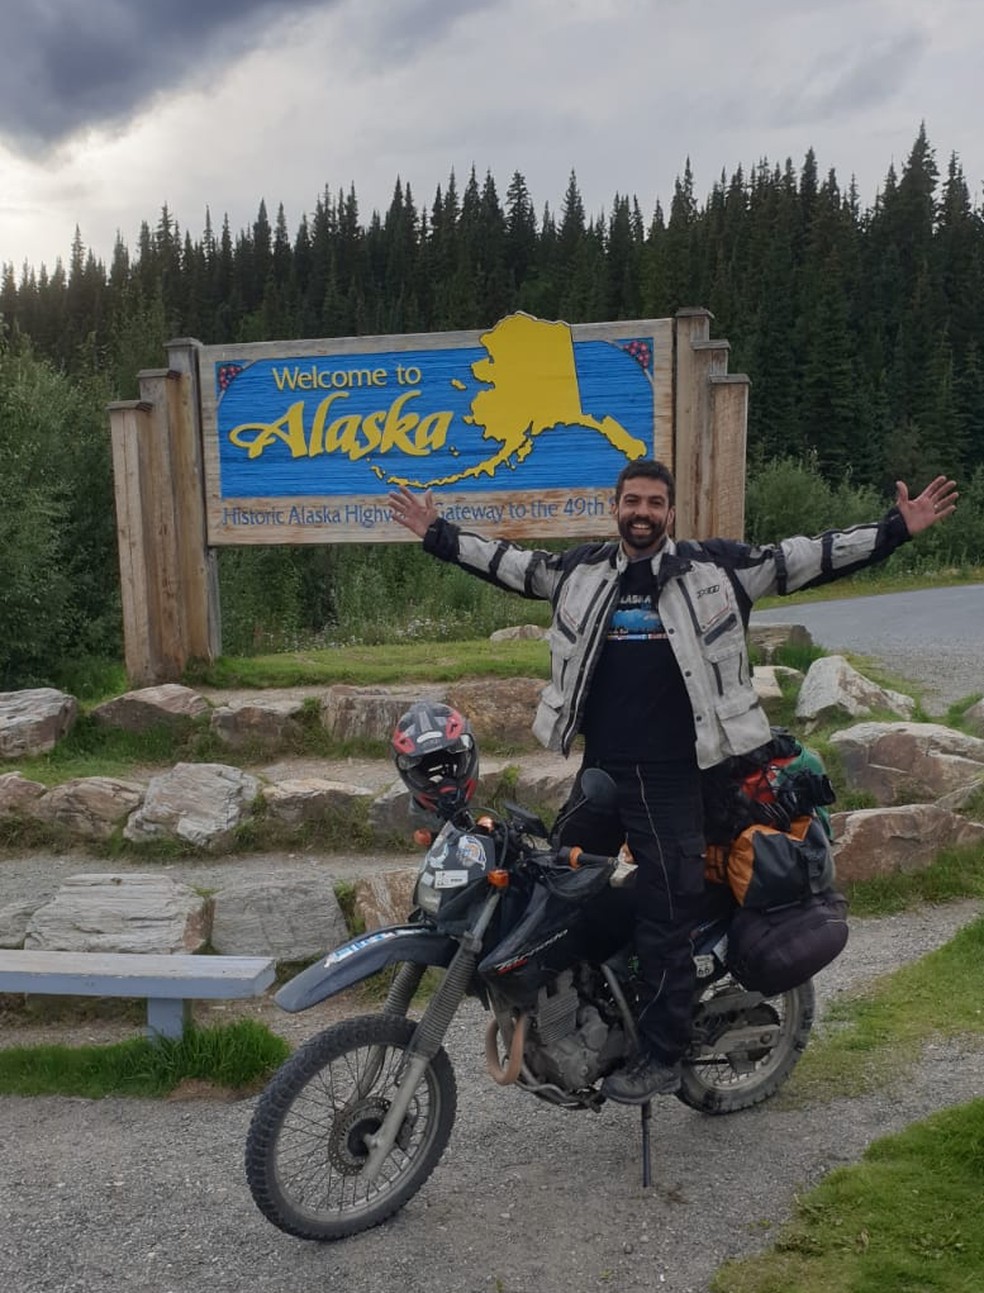 De Caxias do Sul até o Alasca: caxiense percorre 17 países de moto